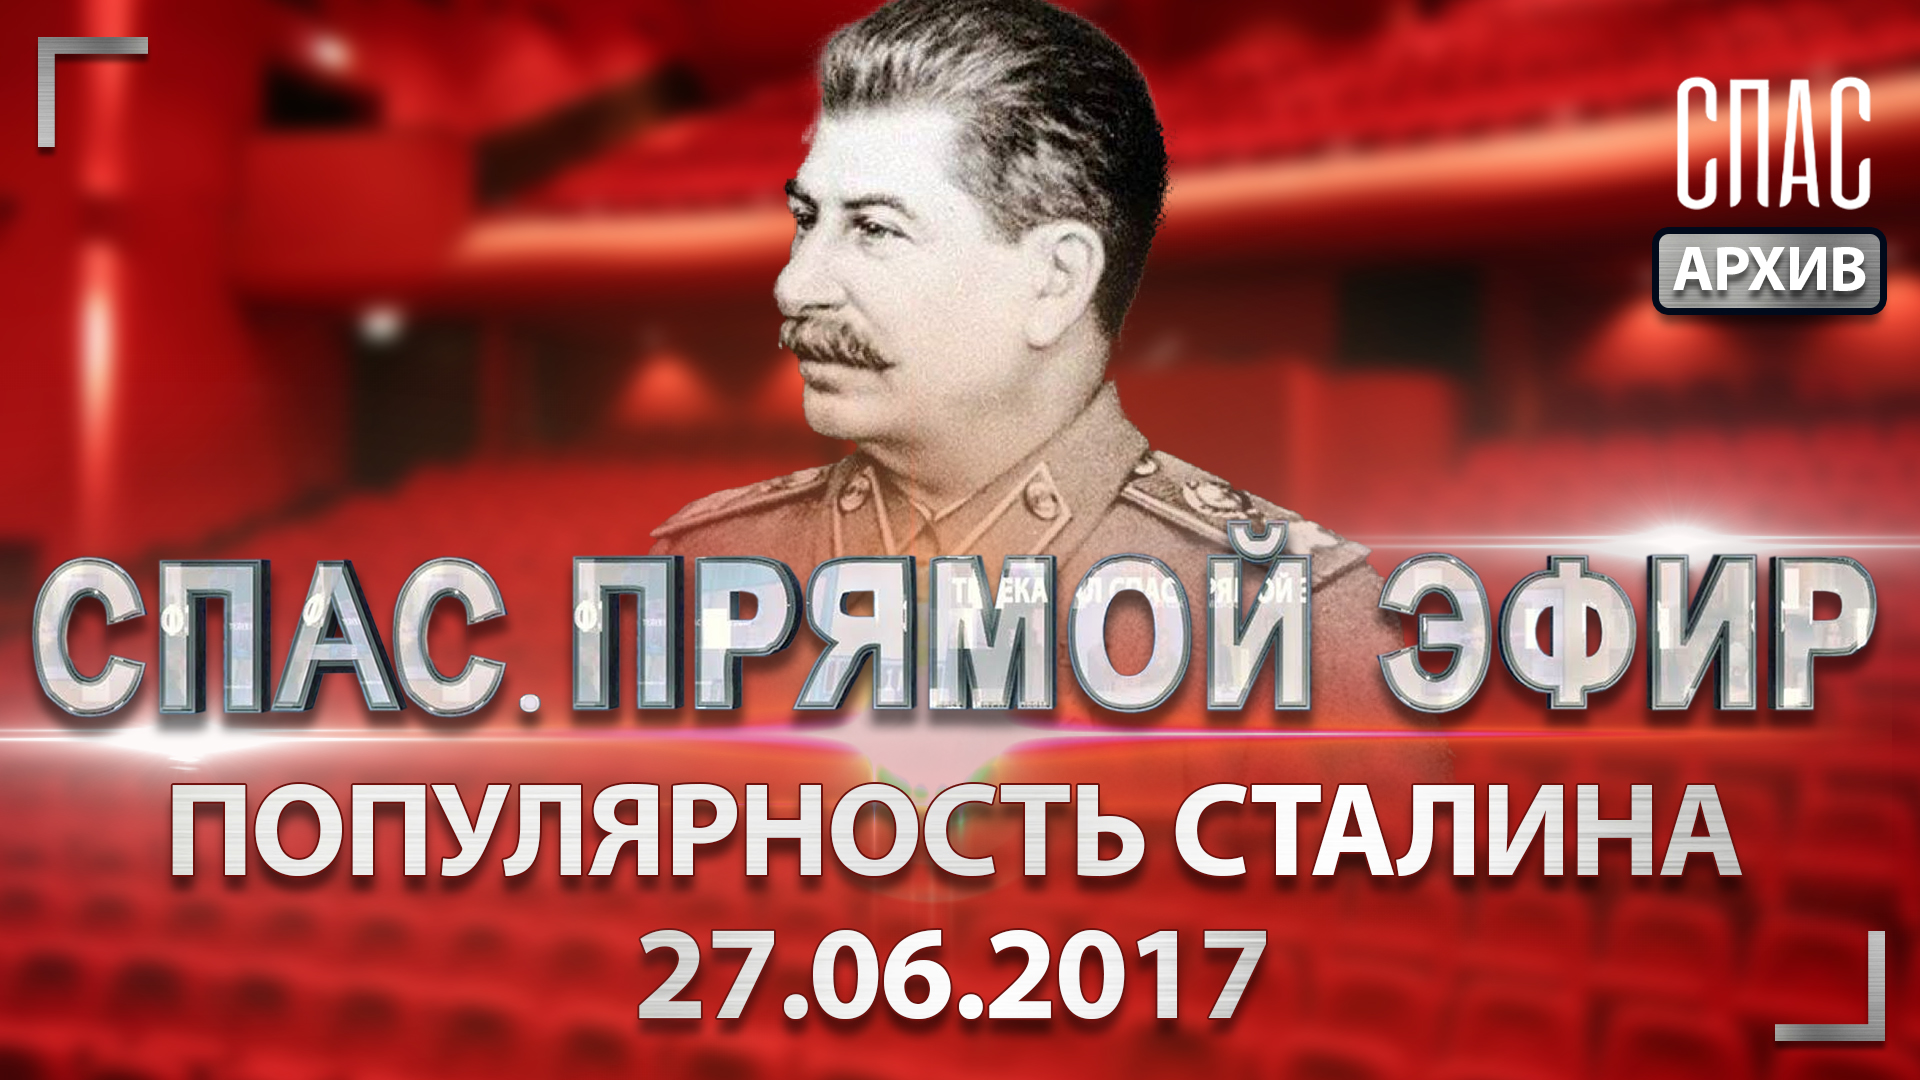 Популярность Сталина. СПАС. ПРЯМОЙ ЭФИР